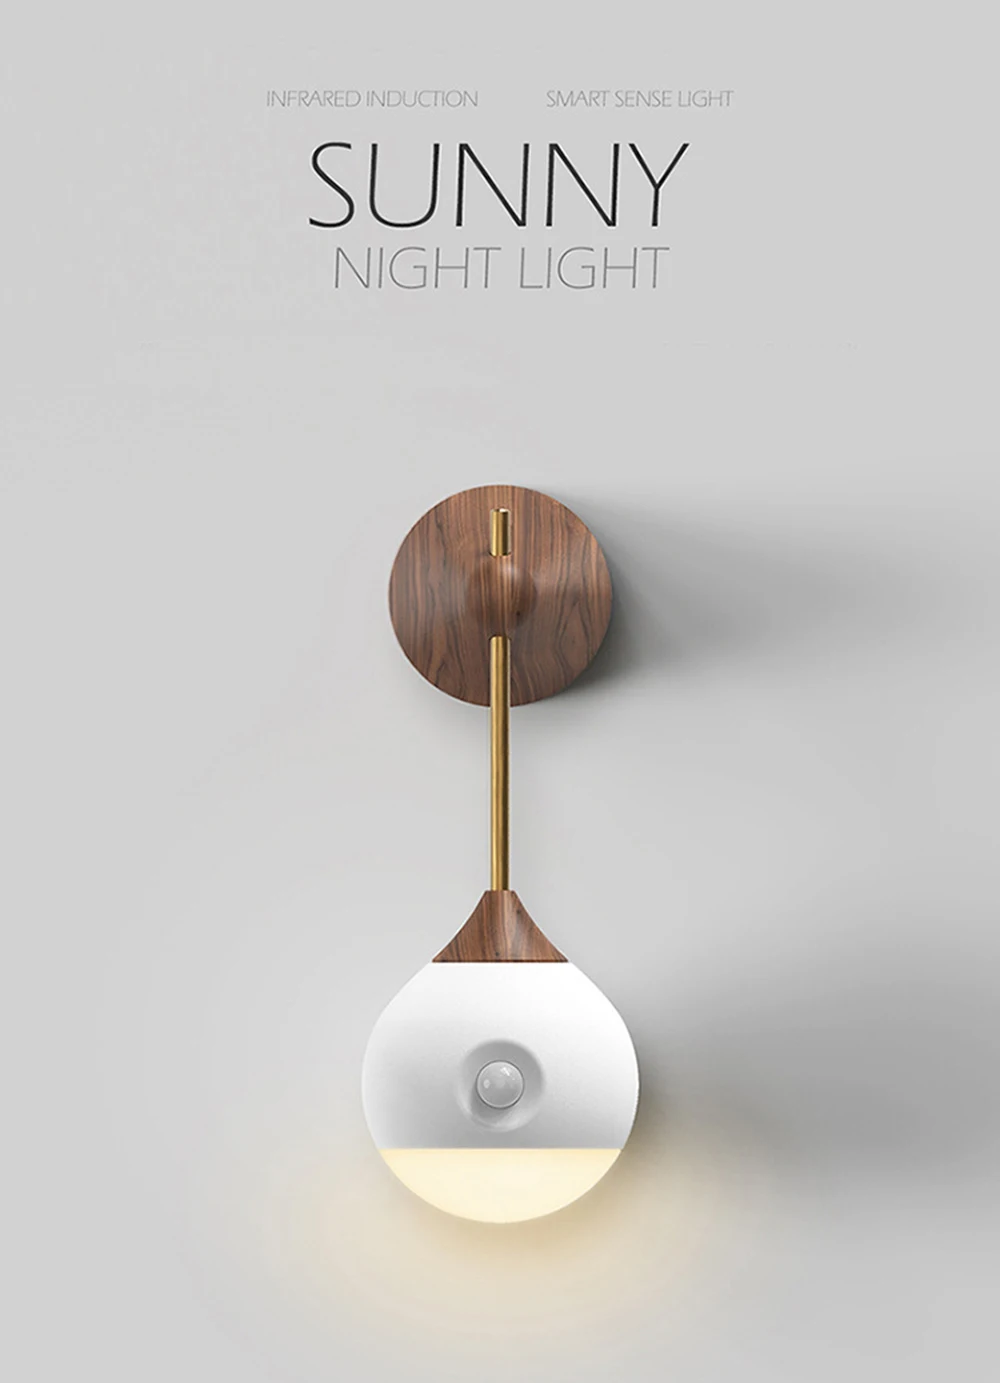 Sothing Sunny Smart sensor ночник инфракрасный индукционный usb зарядка съемный ночник для youpin умный дом